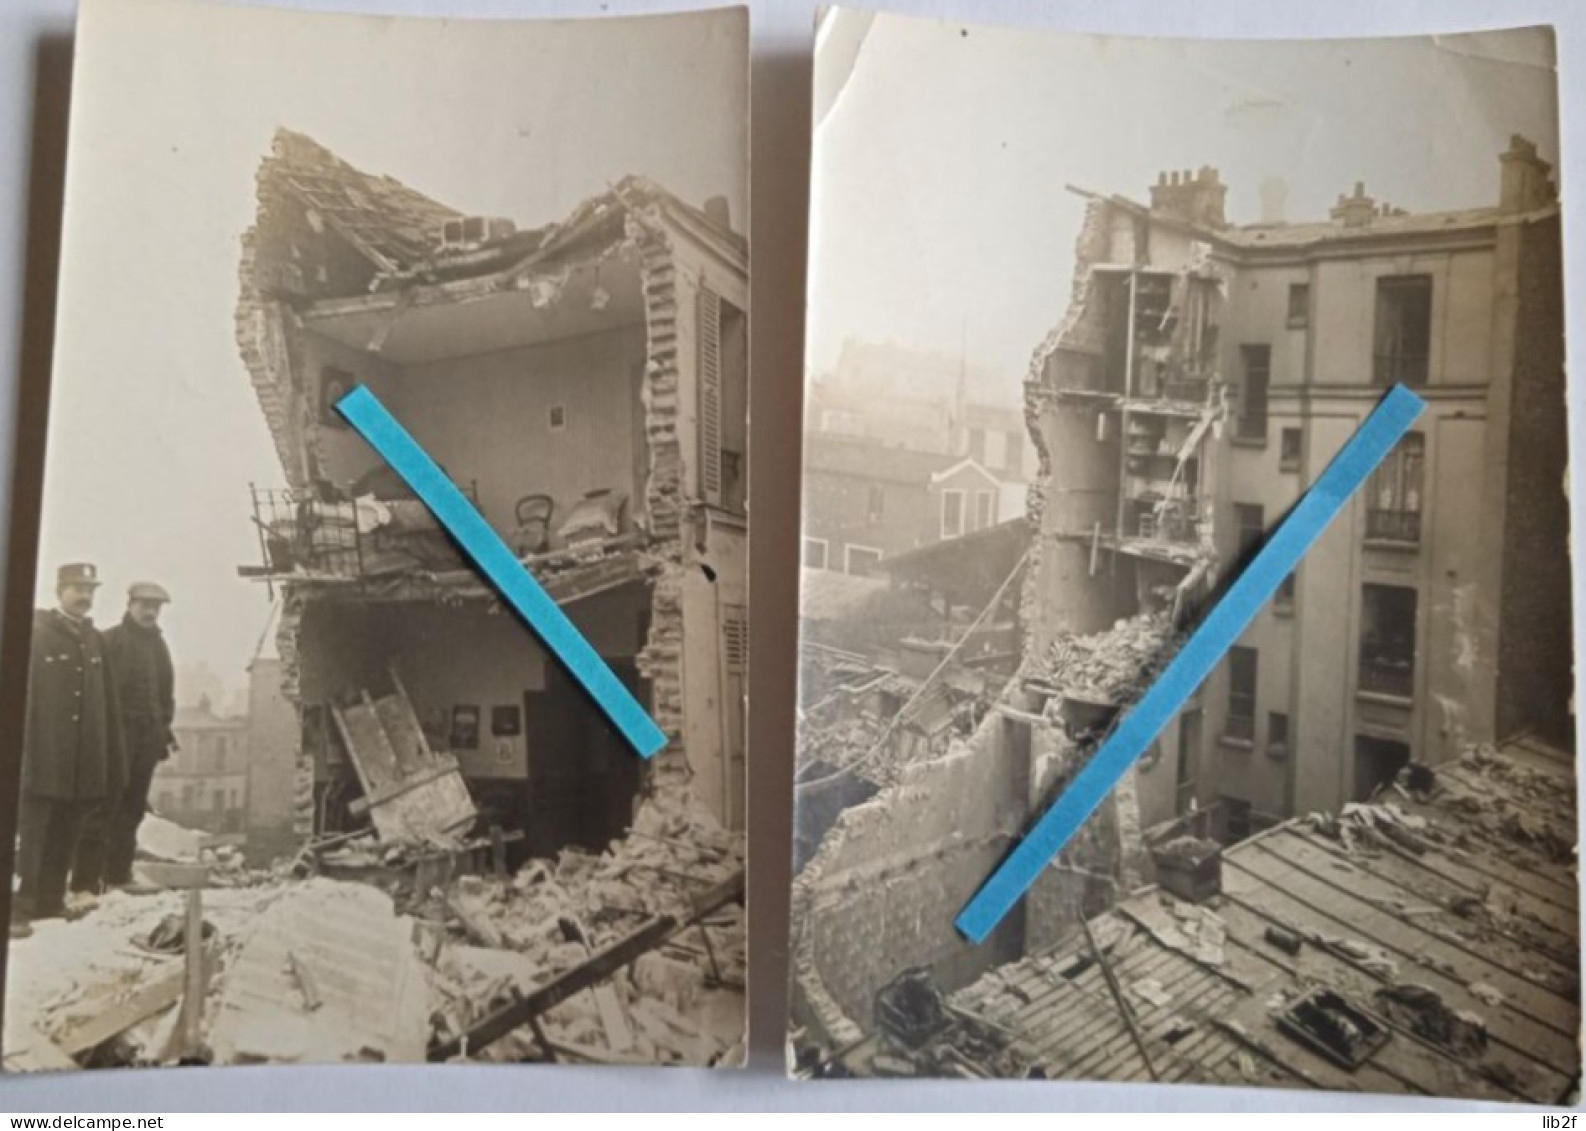 1918 Paris St Paul Bombardement De La Grosse Bertha (lange Max ) Ruines Destructions Ww1 Poilu 14 18 Photo - Guerre, Militaire